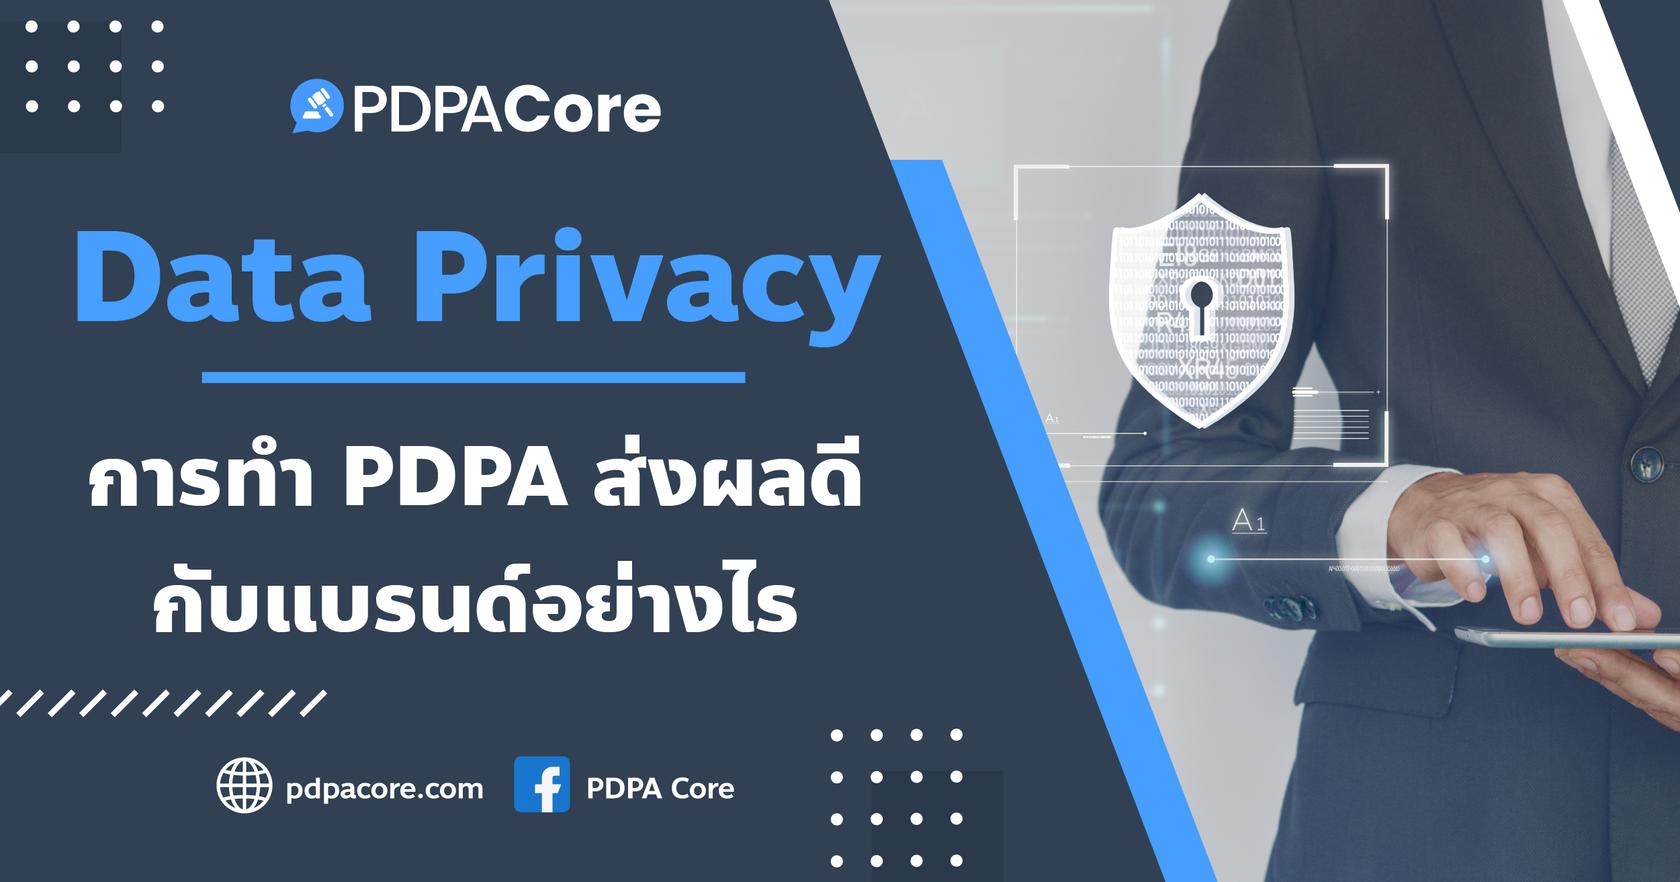 Data Privacy: การทำ PDPA ส่งผลดีกับแบรนด์อย่างไร